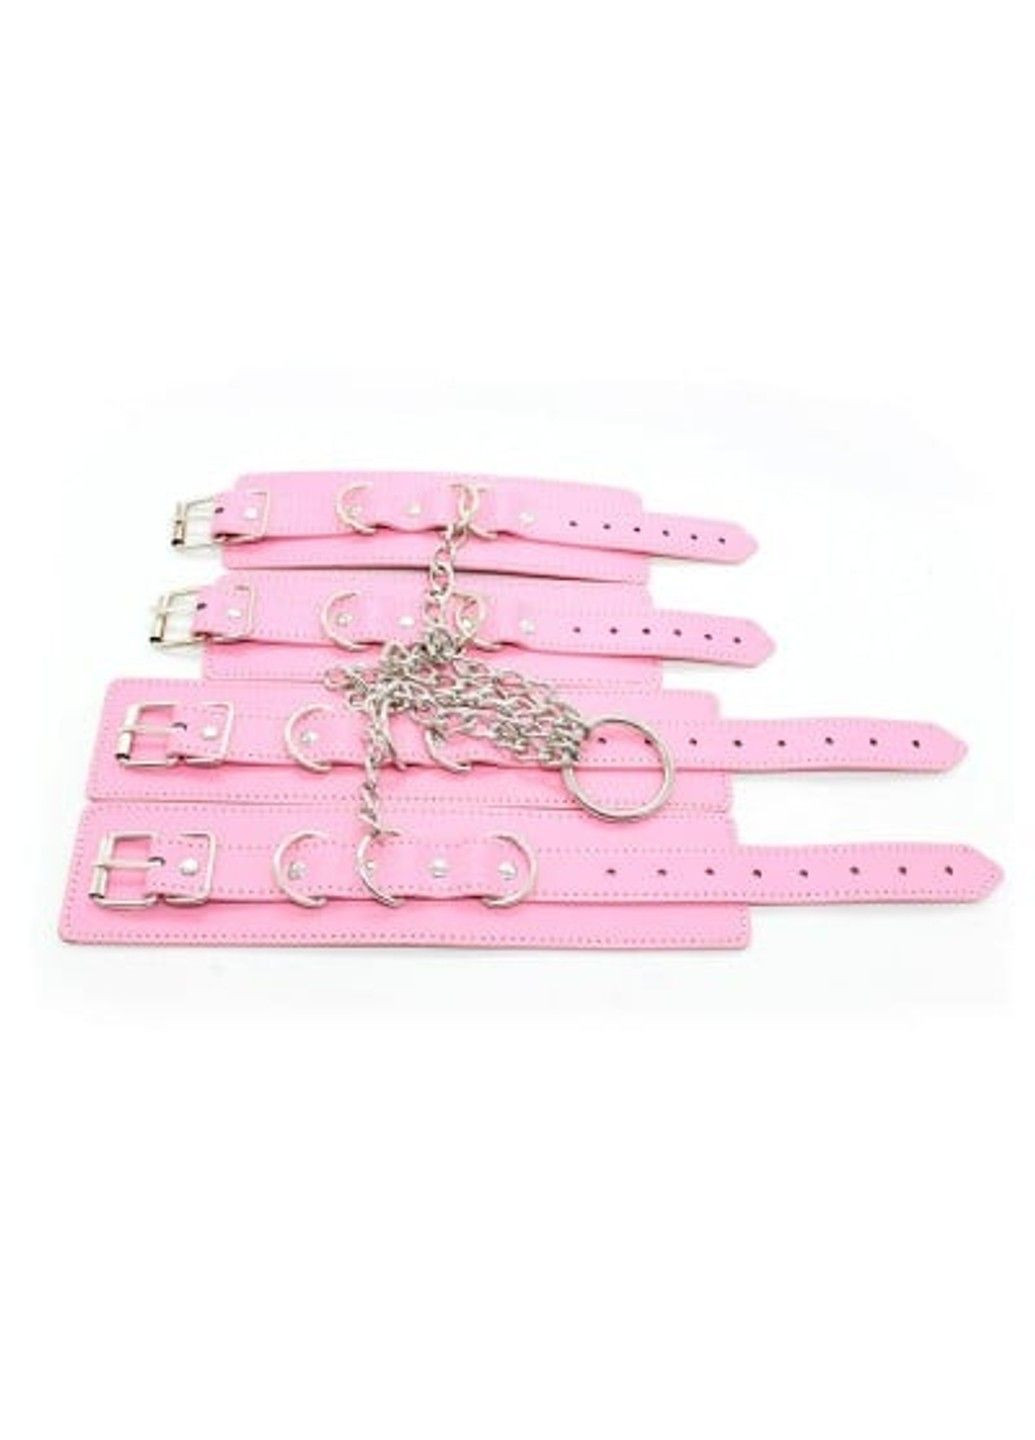 Система фиксации для рук и ног с цепями и кольцом, розовая DS Fetish (292011230)